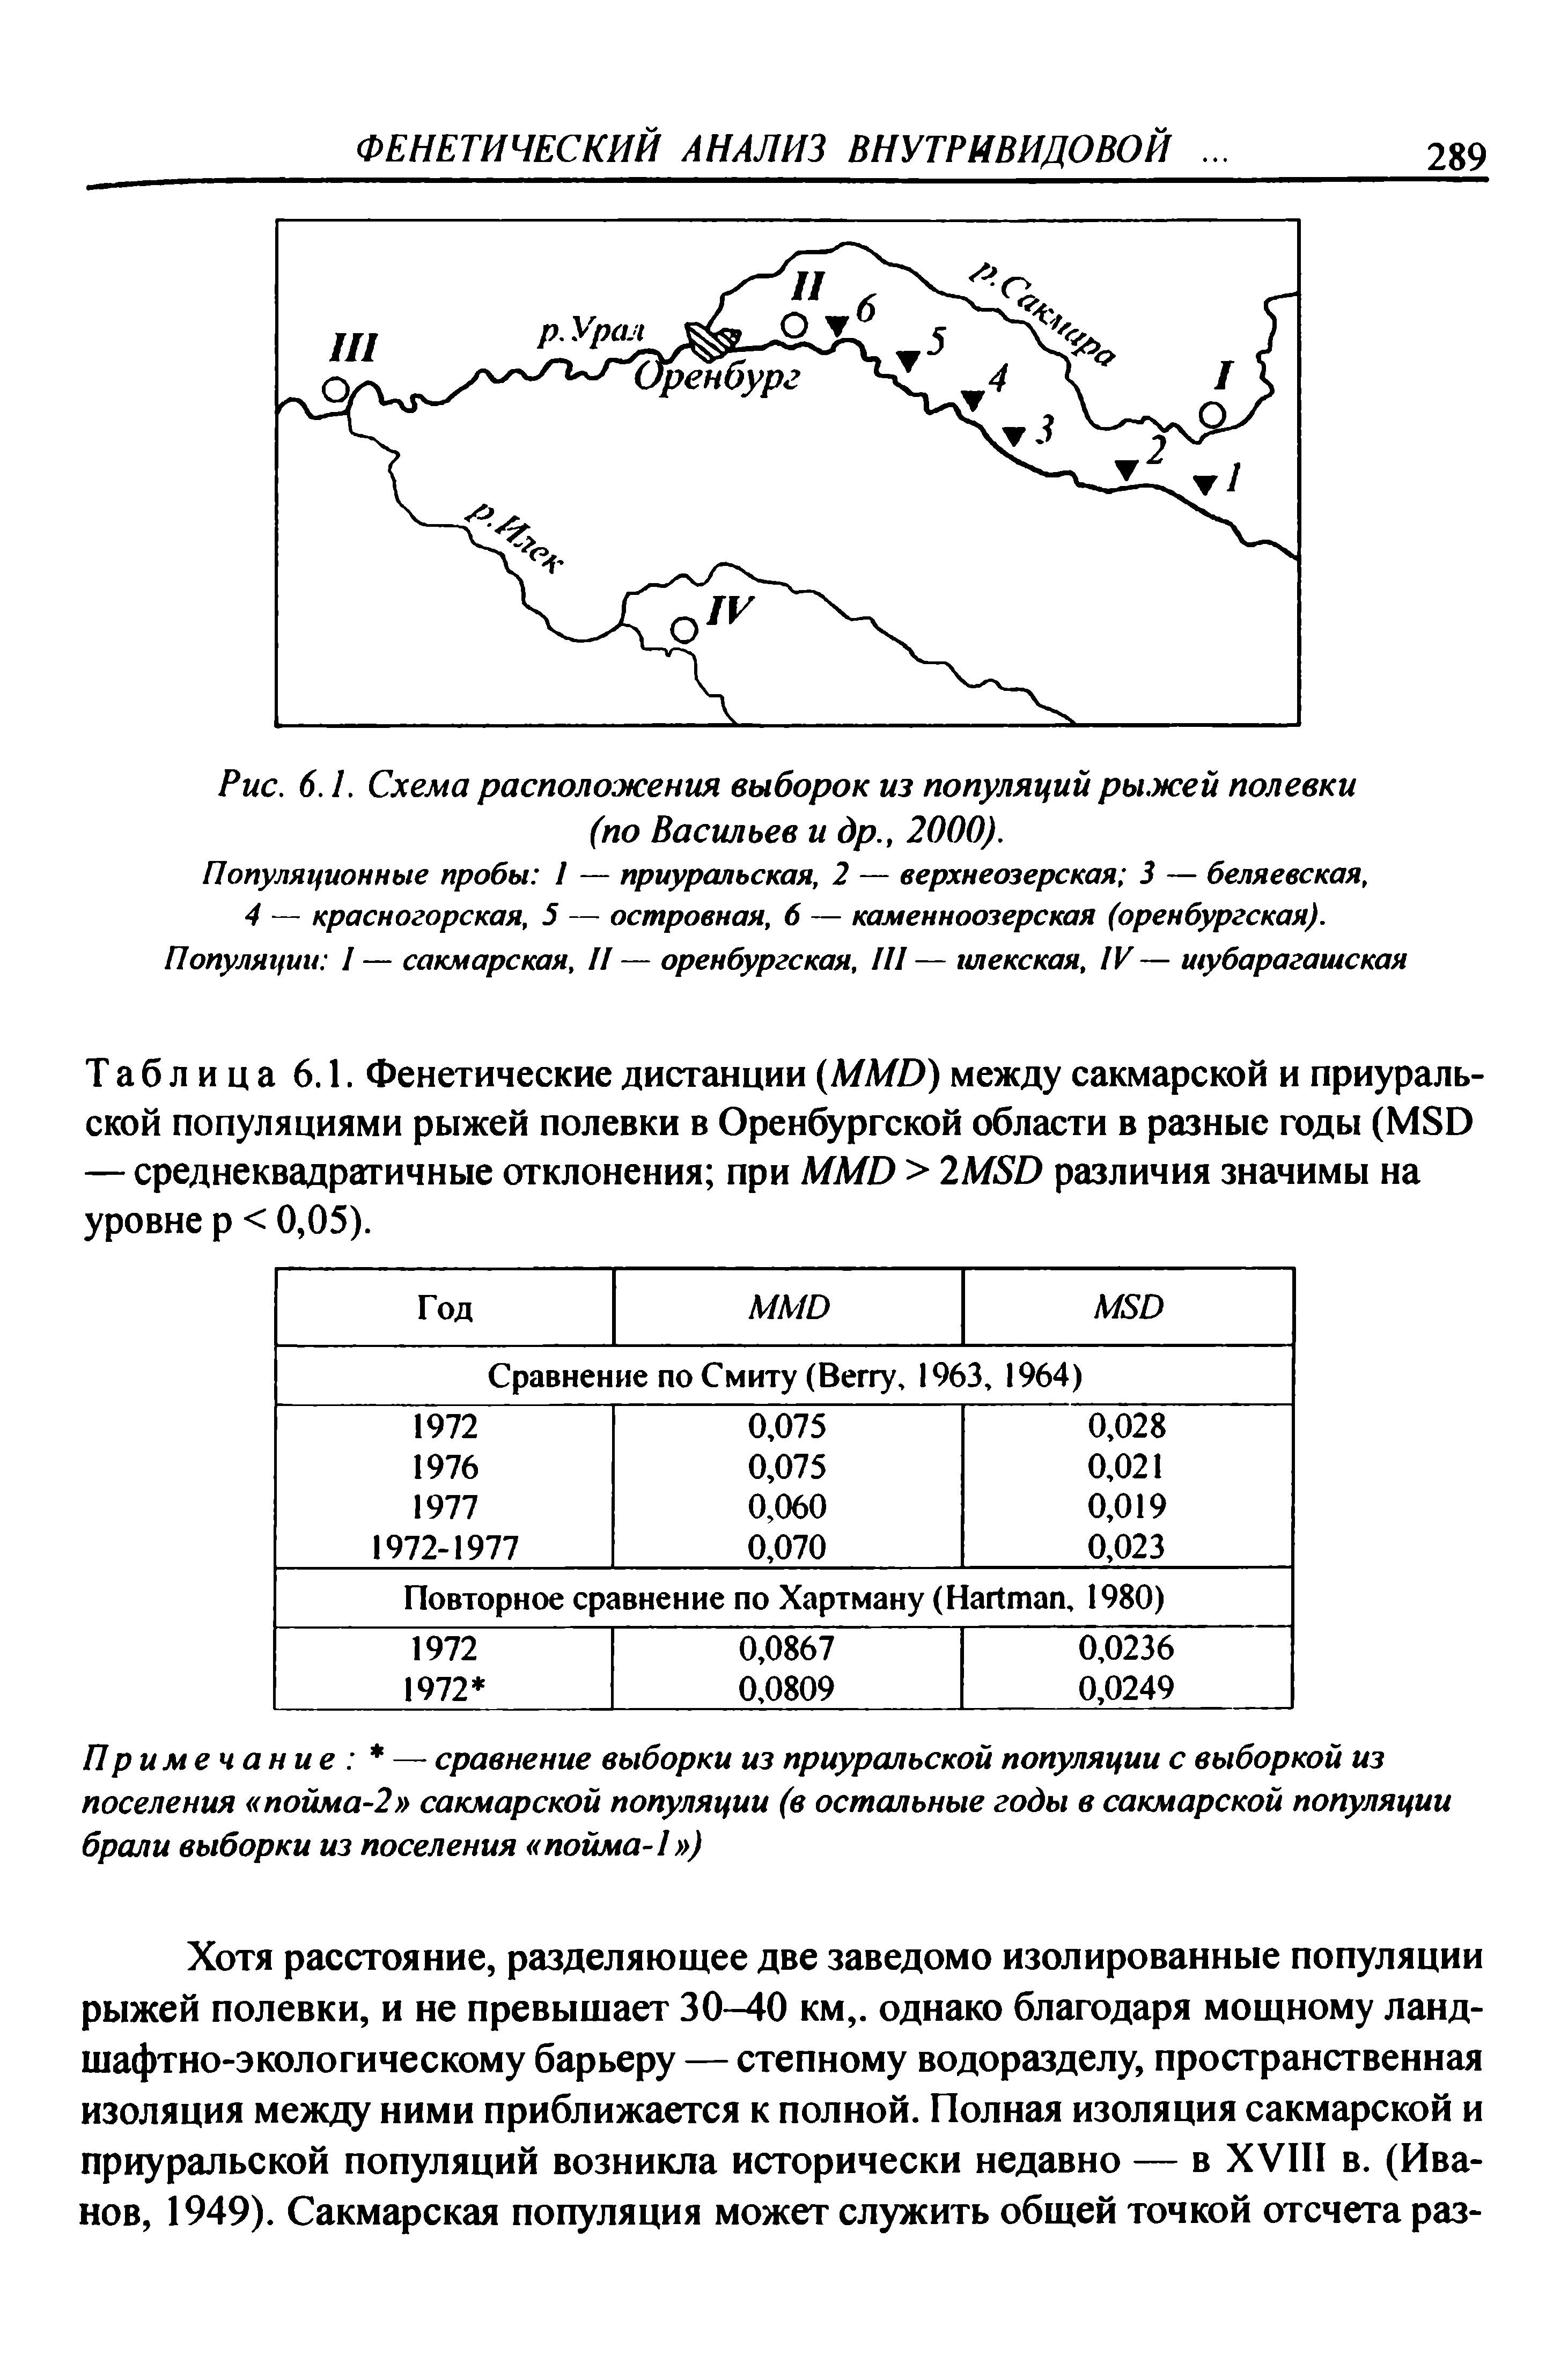 Таблица 6.1. Фенетические дистанции (ММО) между сакмарской и приуральской популяциями рыжей полевки в Оренбургской области в разные годы (М8О — среднеквадратичные отклонения при ММО > 2М8О различия значимы на уровне р < 0,05).